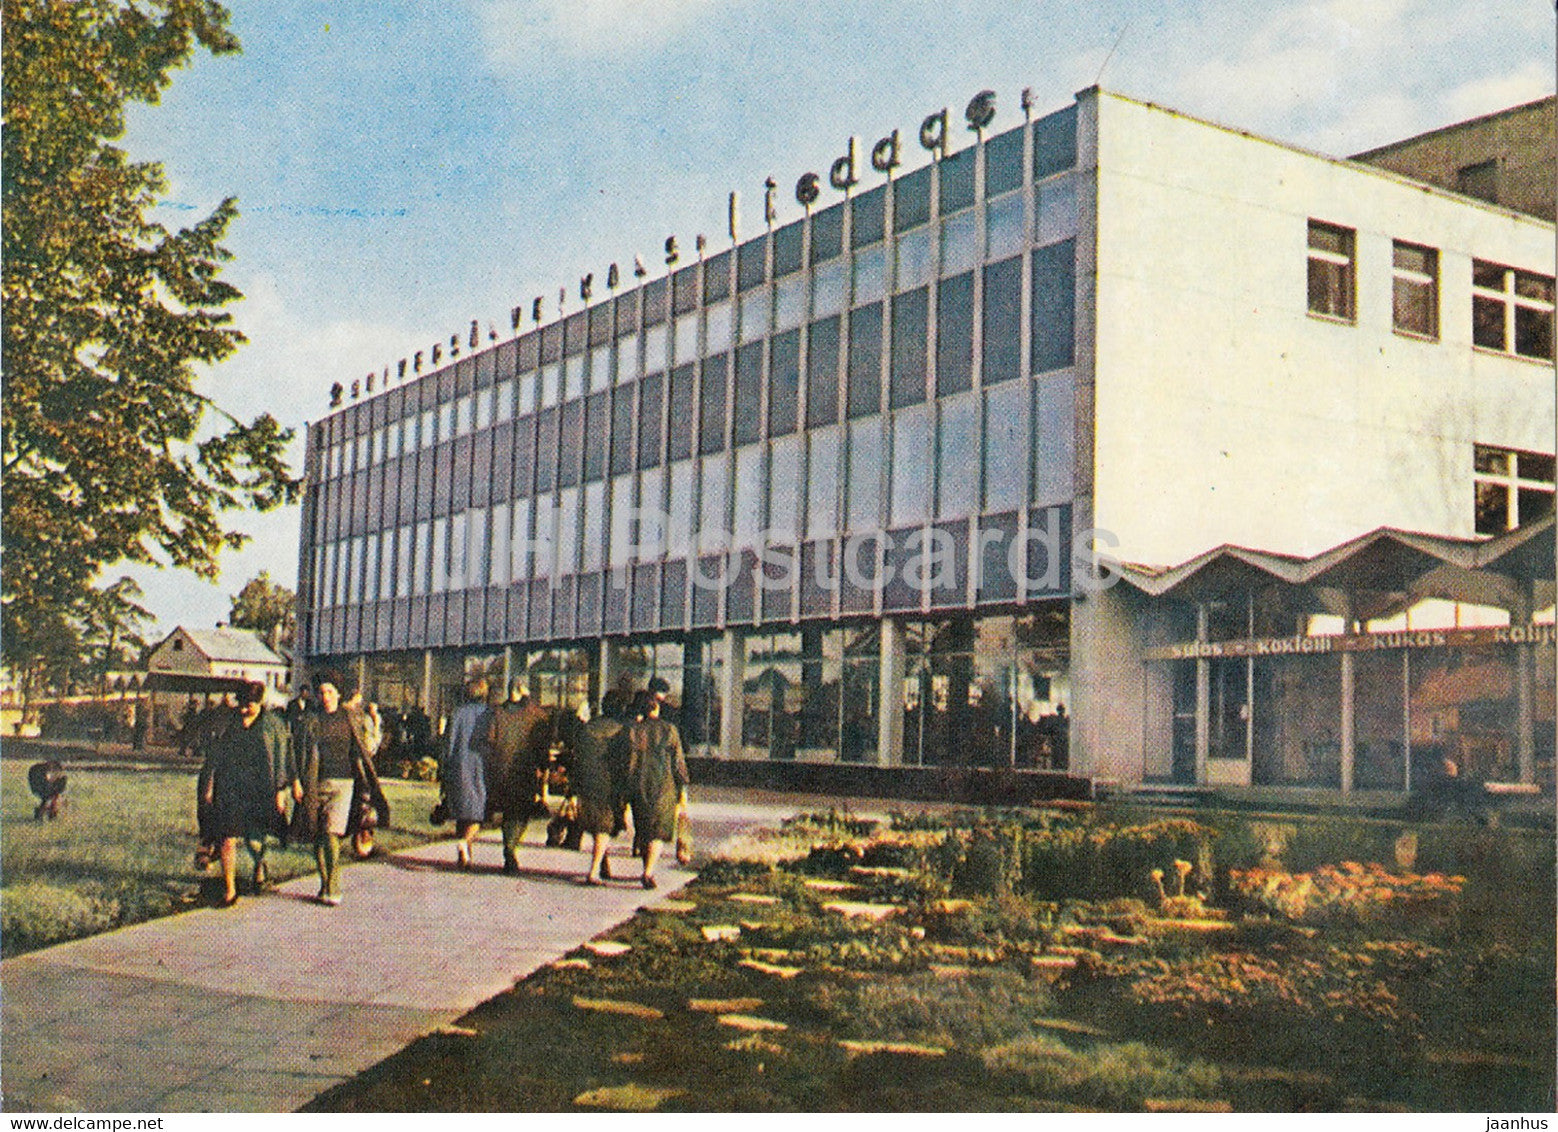 Jurmala - Department Store Liedags in Sloka - Latvia USSR - unused - JH Postcards